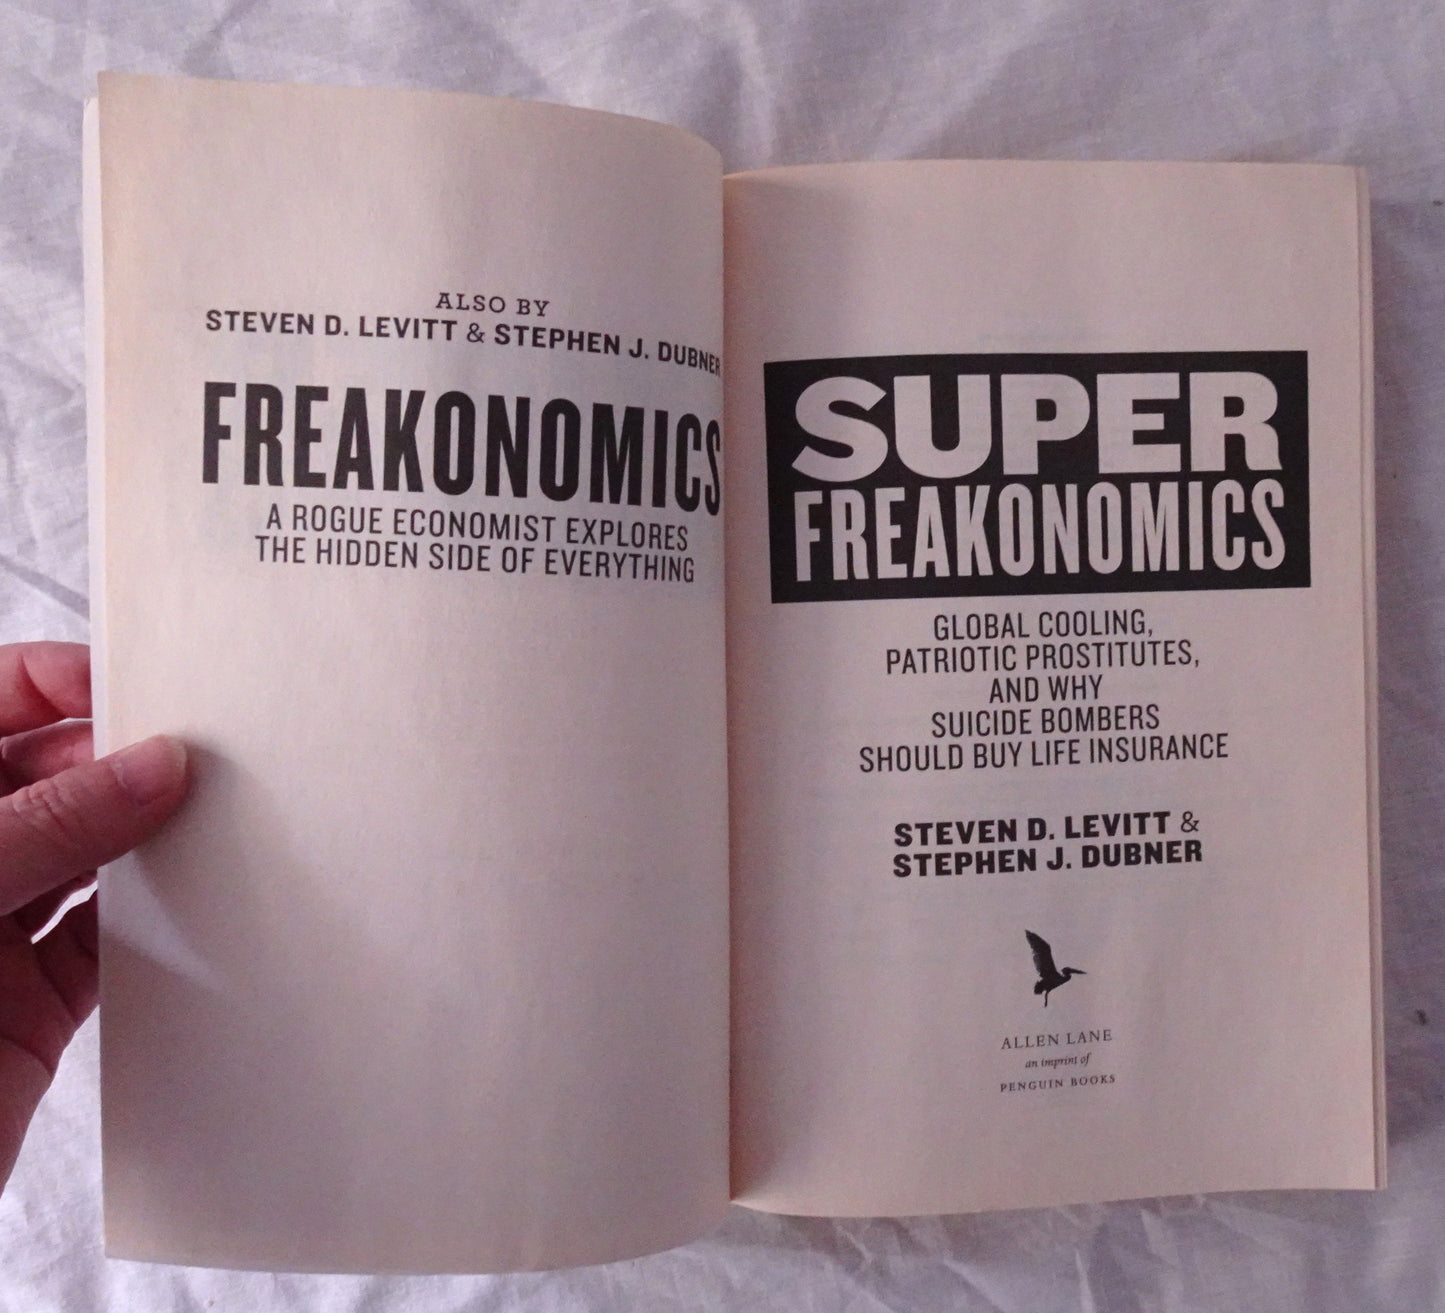 Superfreakonomics by Steven D. Levitt & Stephen J. Dubner